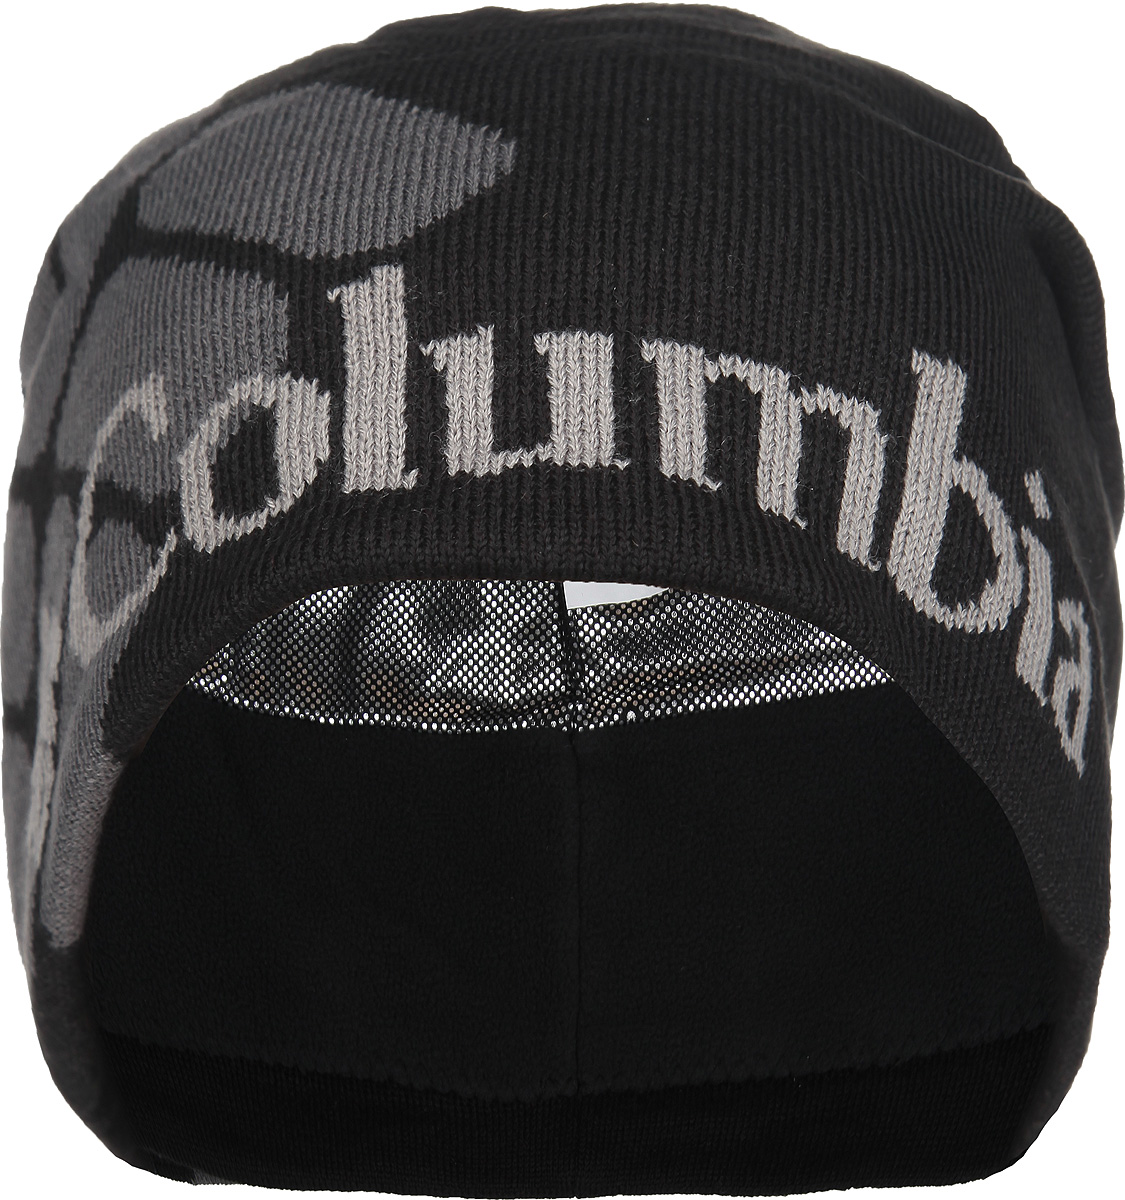 Шапка унисекс Columbia Heat Beanie, цвет: черный. CU9171-014. Размер универсальный